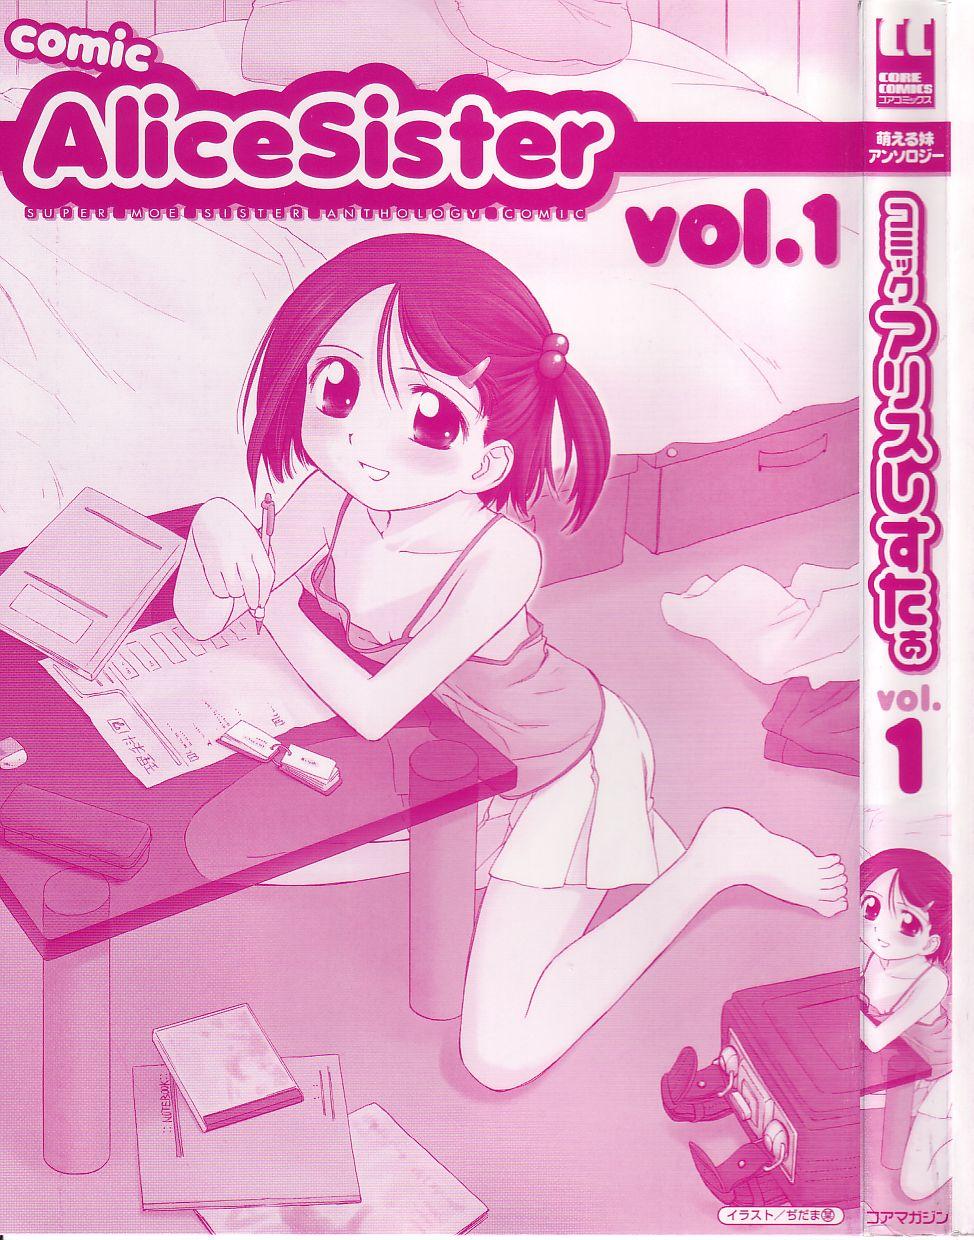 Comic Alice Sister Vol.1 4